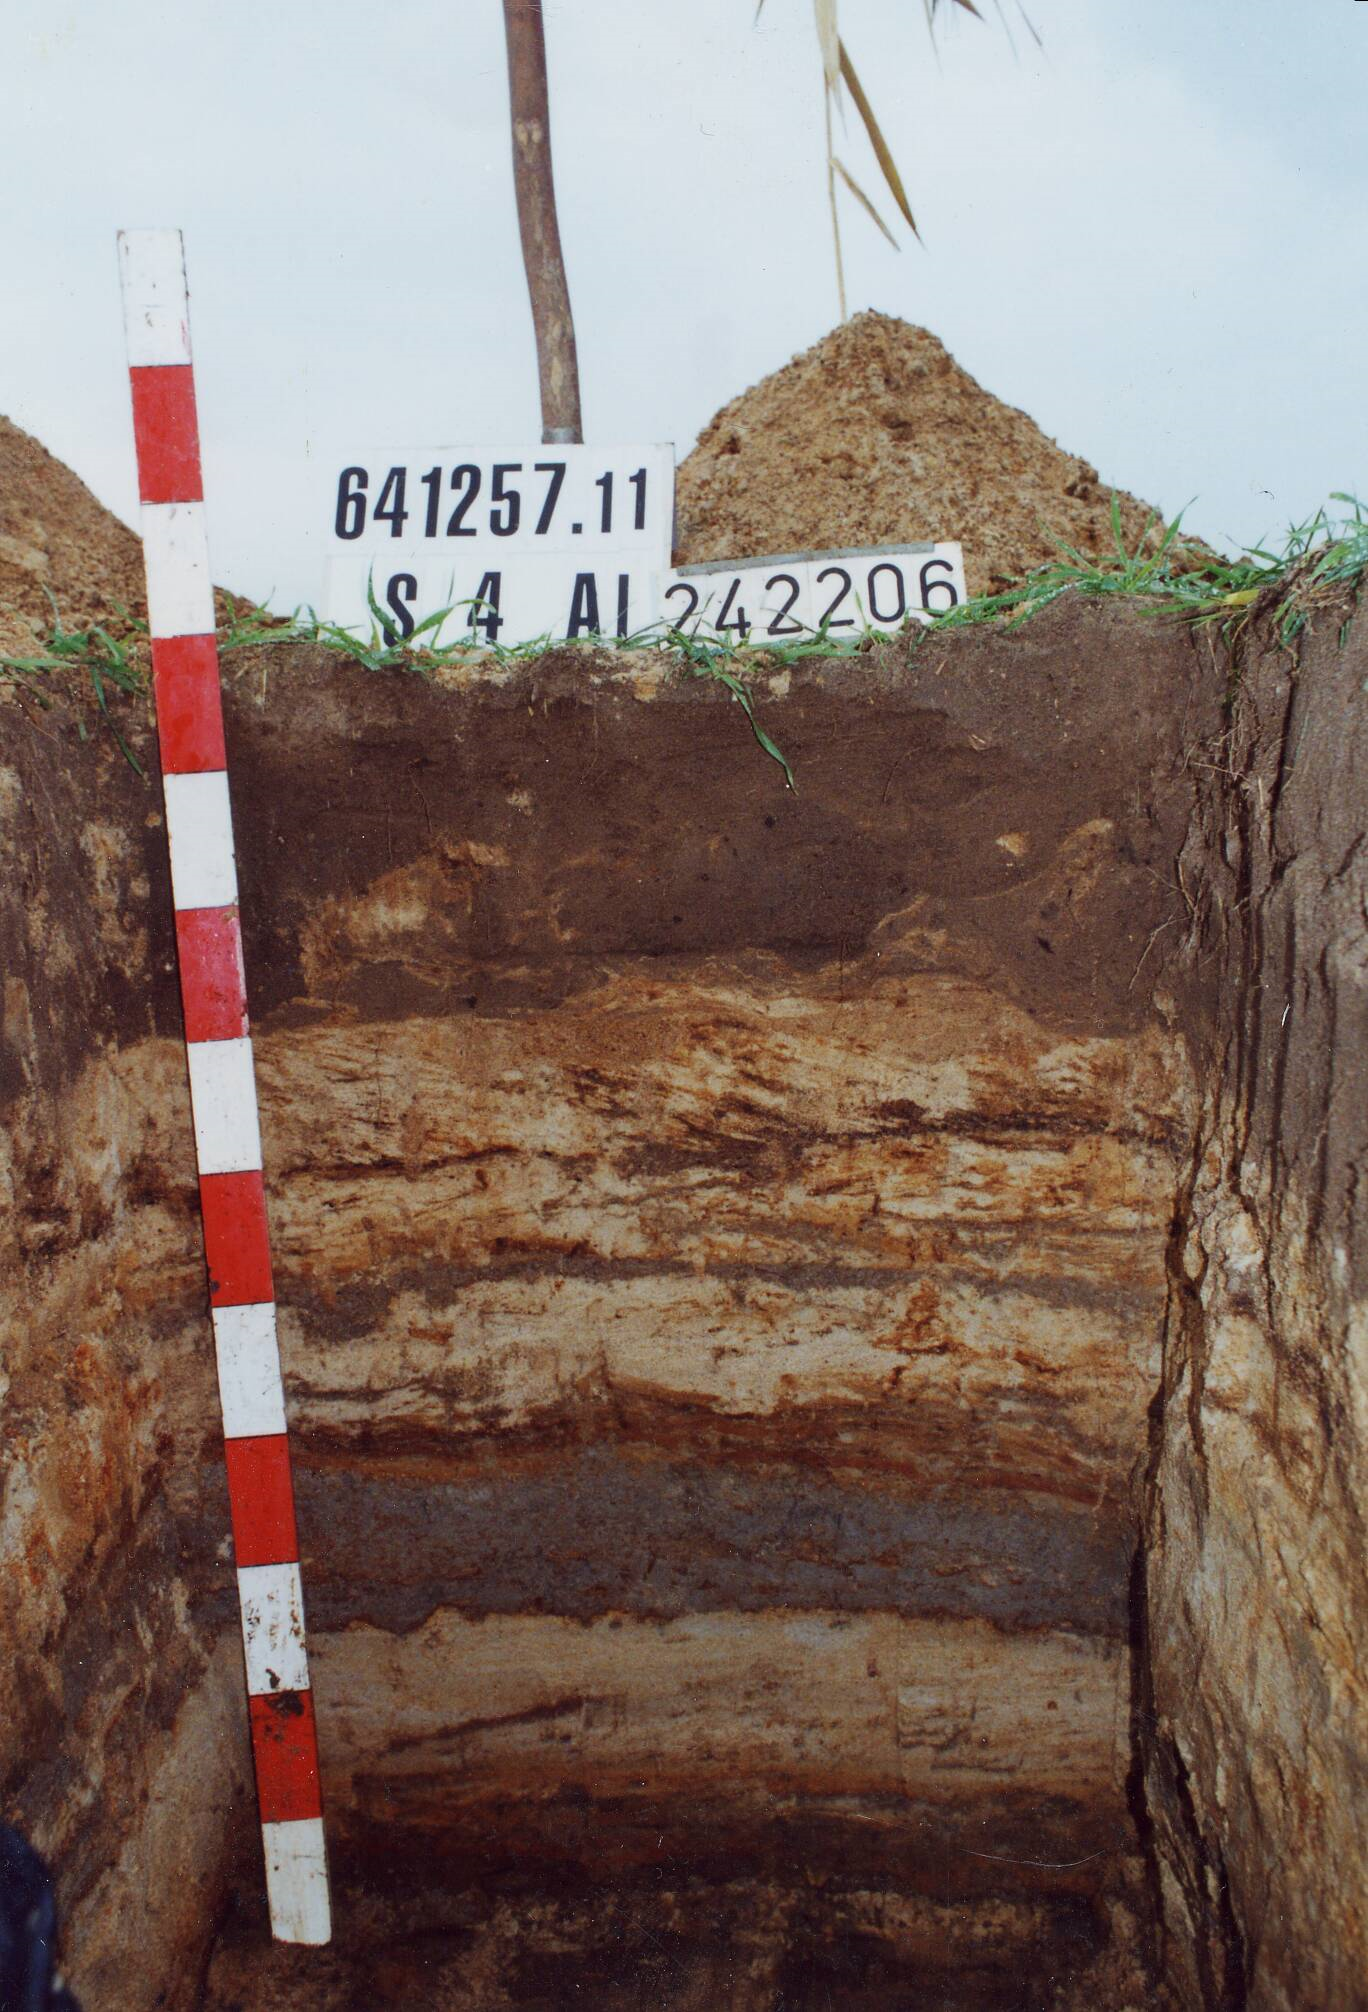 Das Bild zeigt eine Nahaufnahme eines Bodenprofils eines Auengleys mit seinen verschiedenen Bodenhorizonten, die verschiedene Bereiche farblich voneinander abgrenzen.